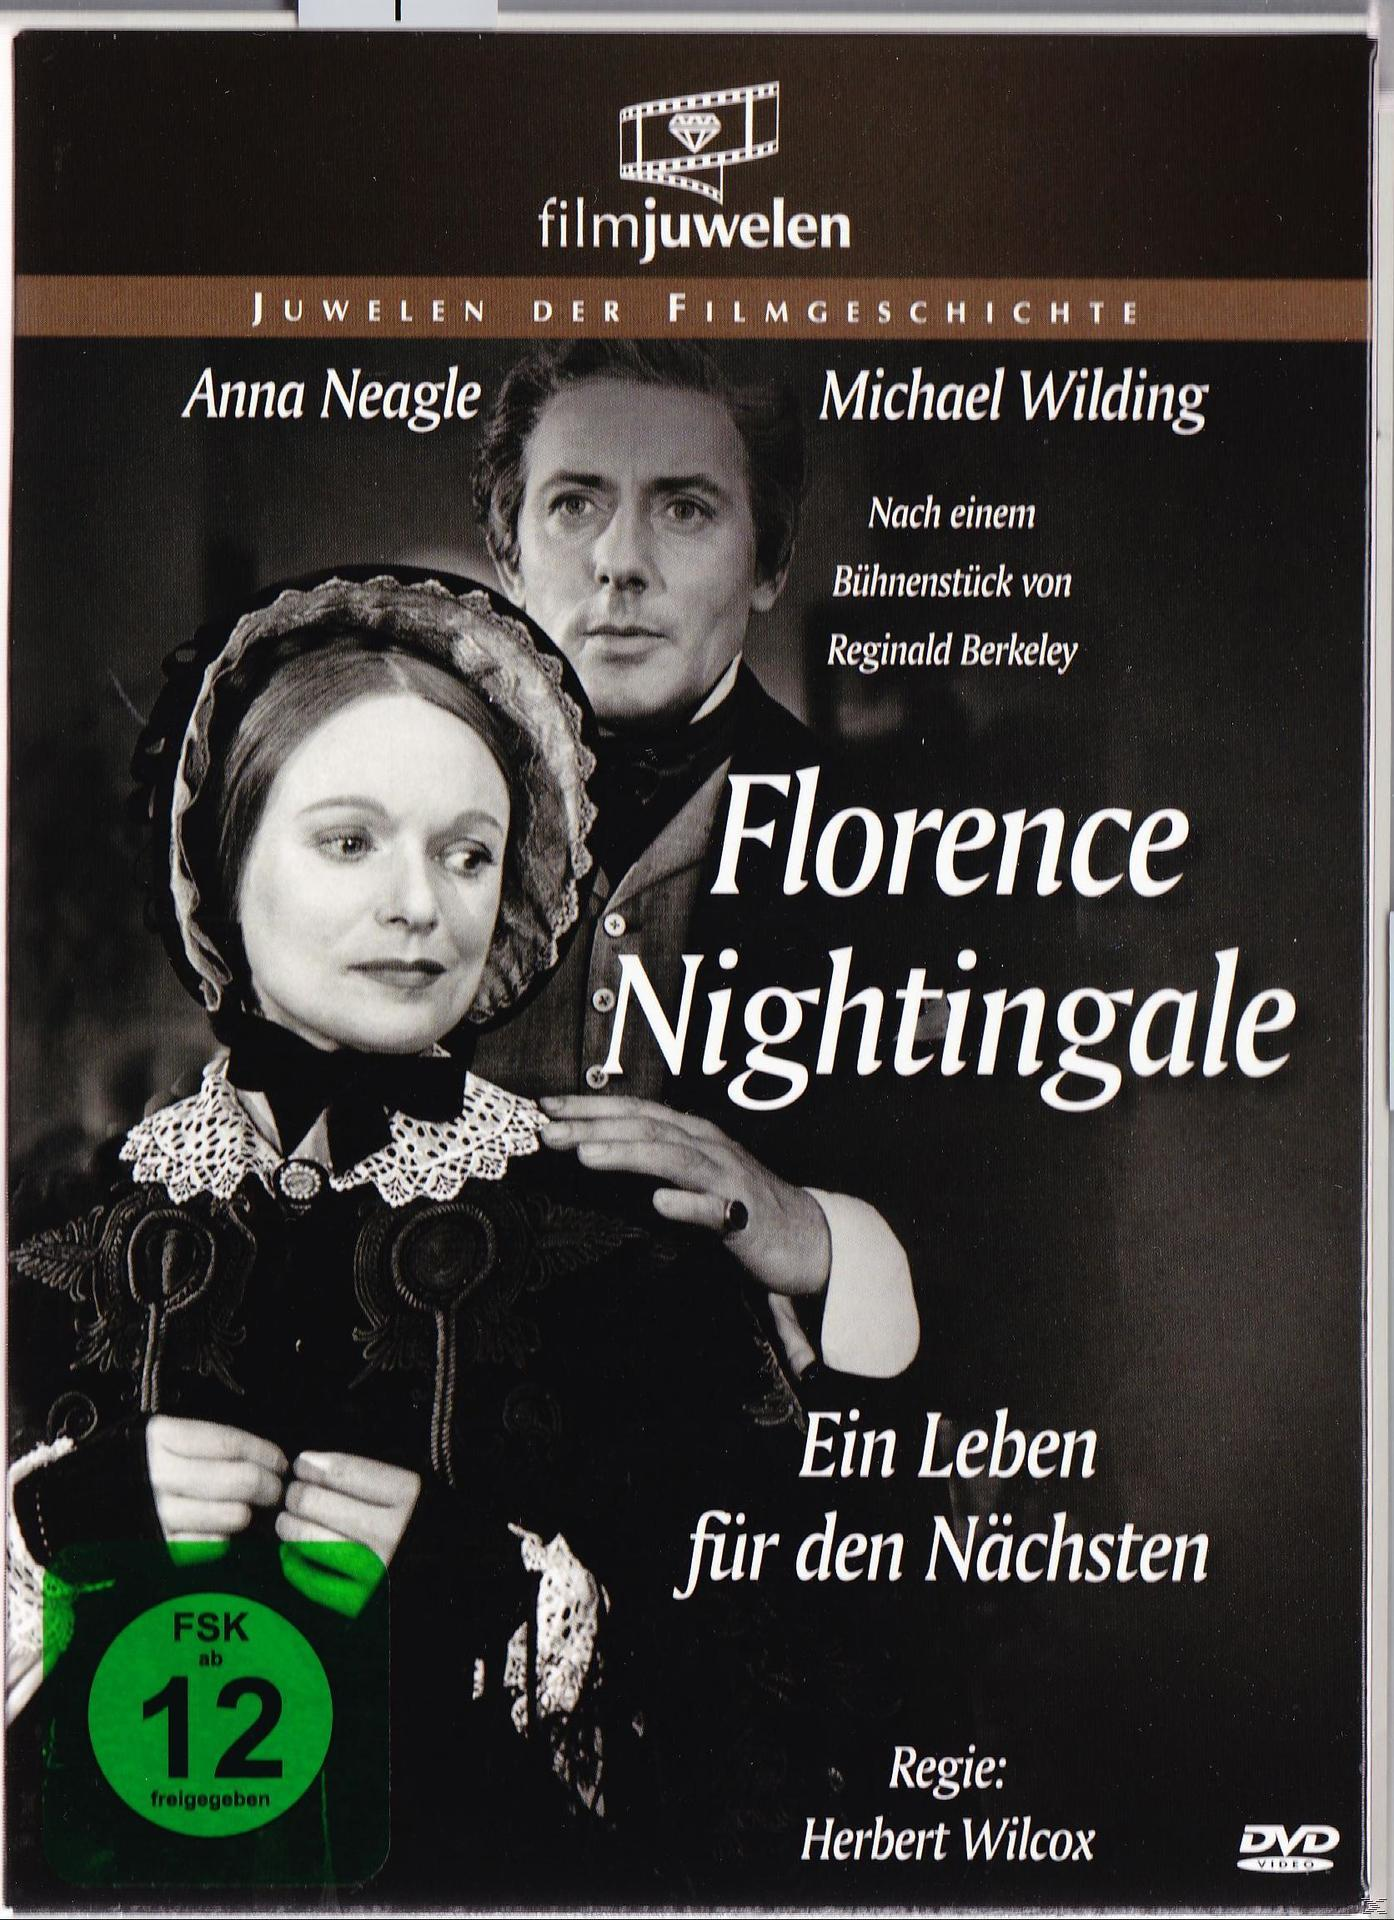 LEBEN - FÜR DVD FLORENCE NÄCHSTEN NIGHTINGALE DEN EIN